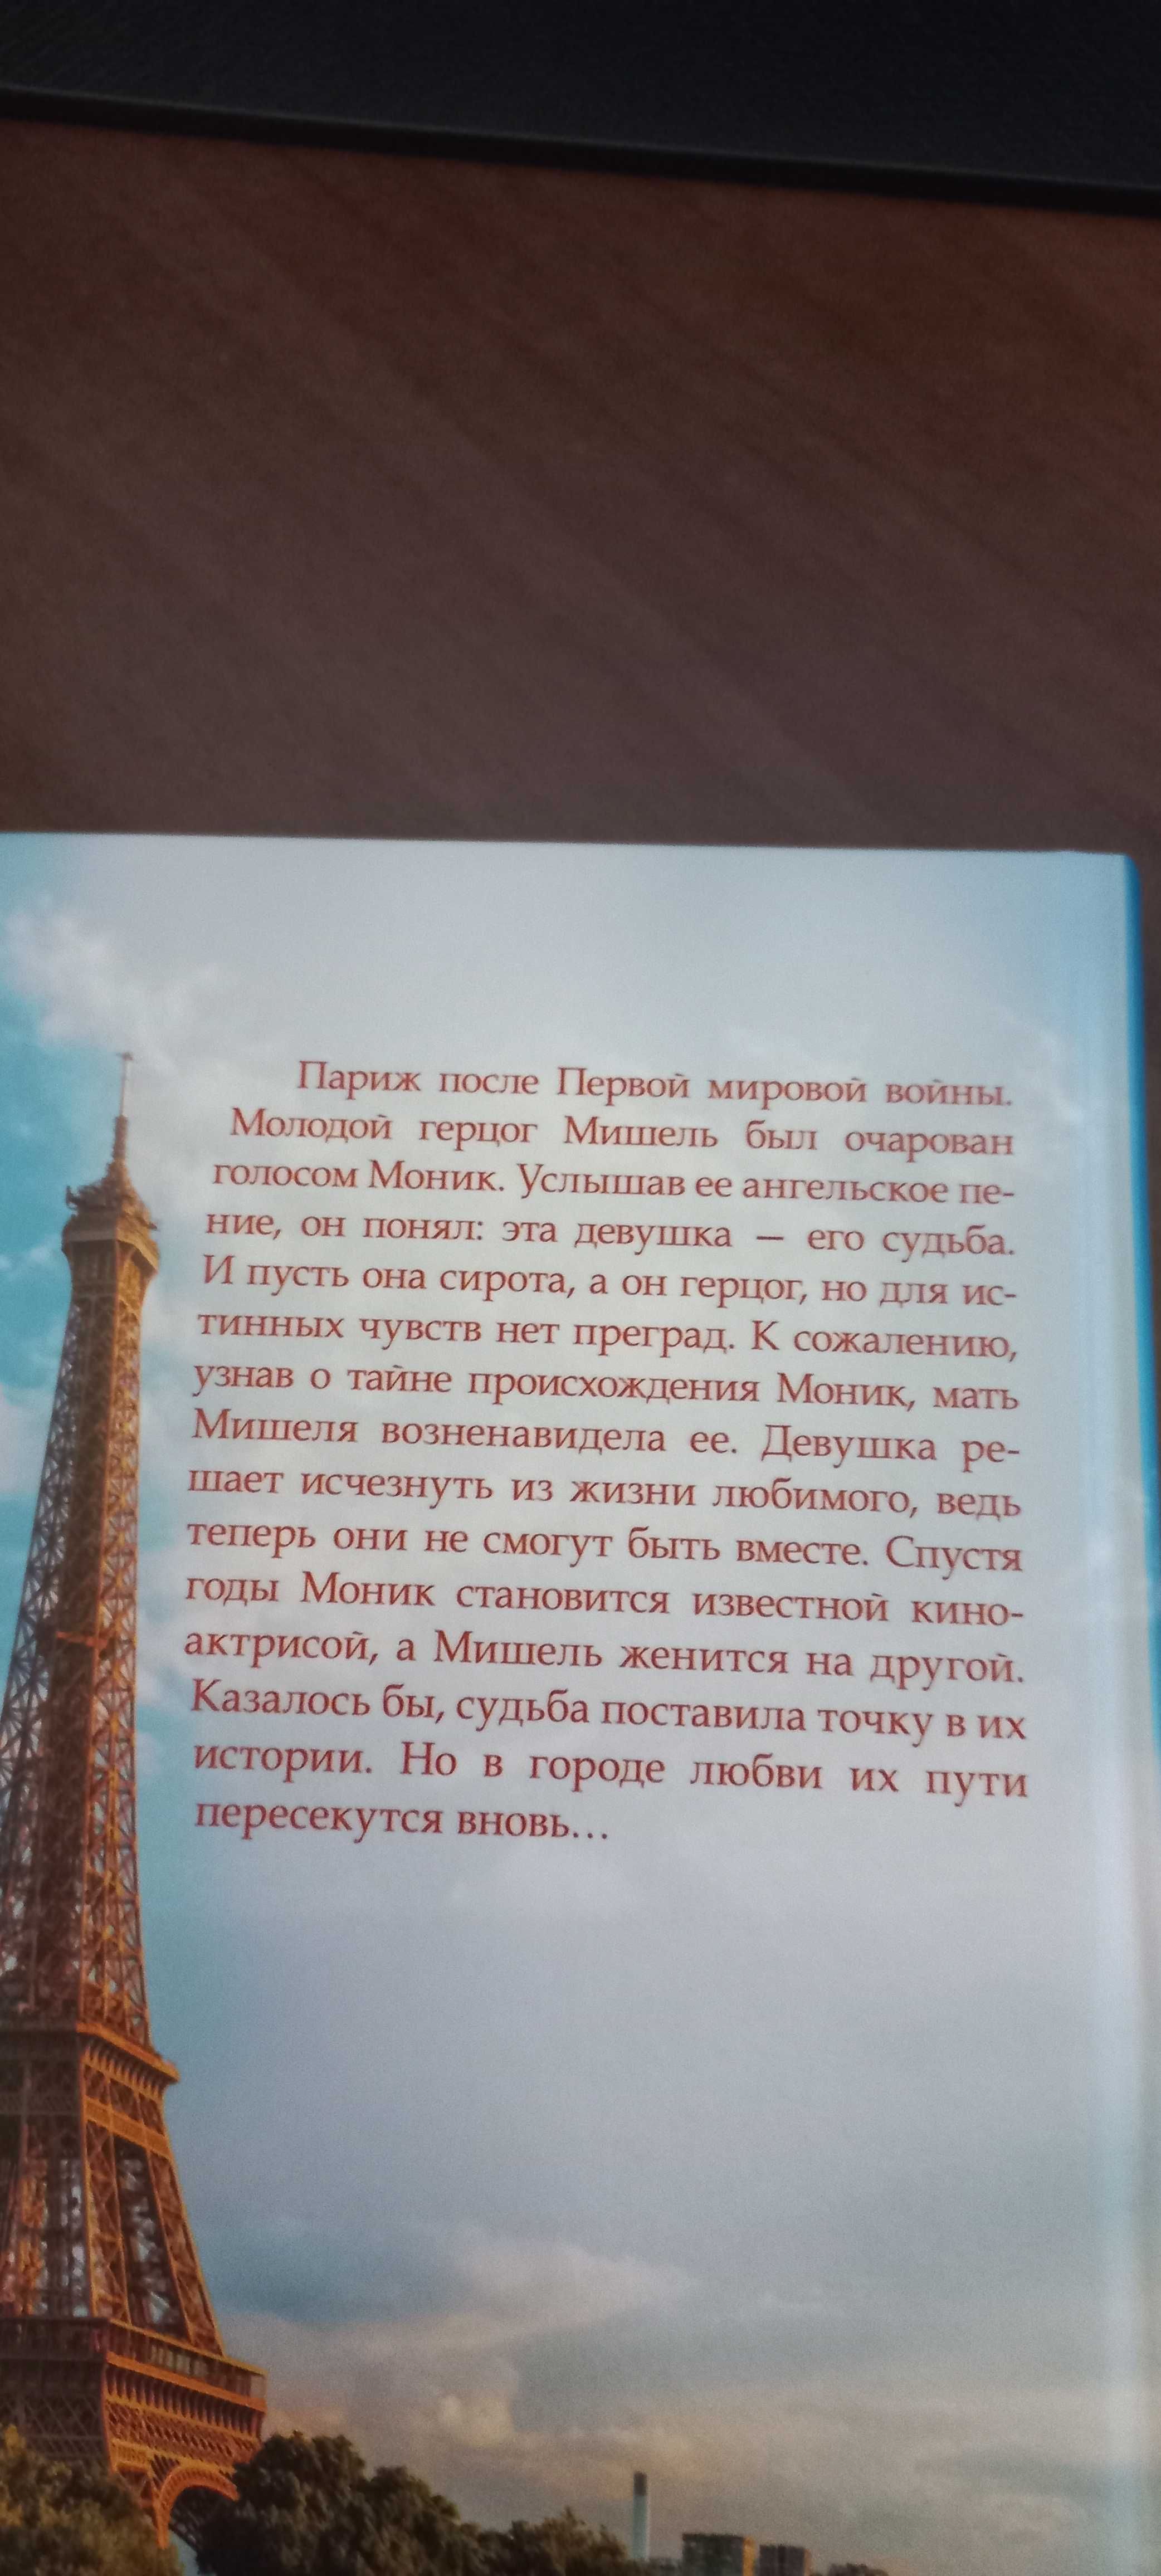 Екатерина Липс роман "Роковое увлечение"